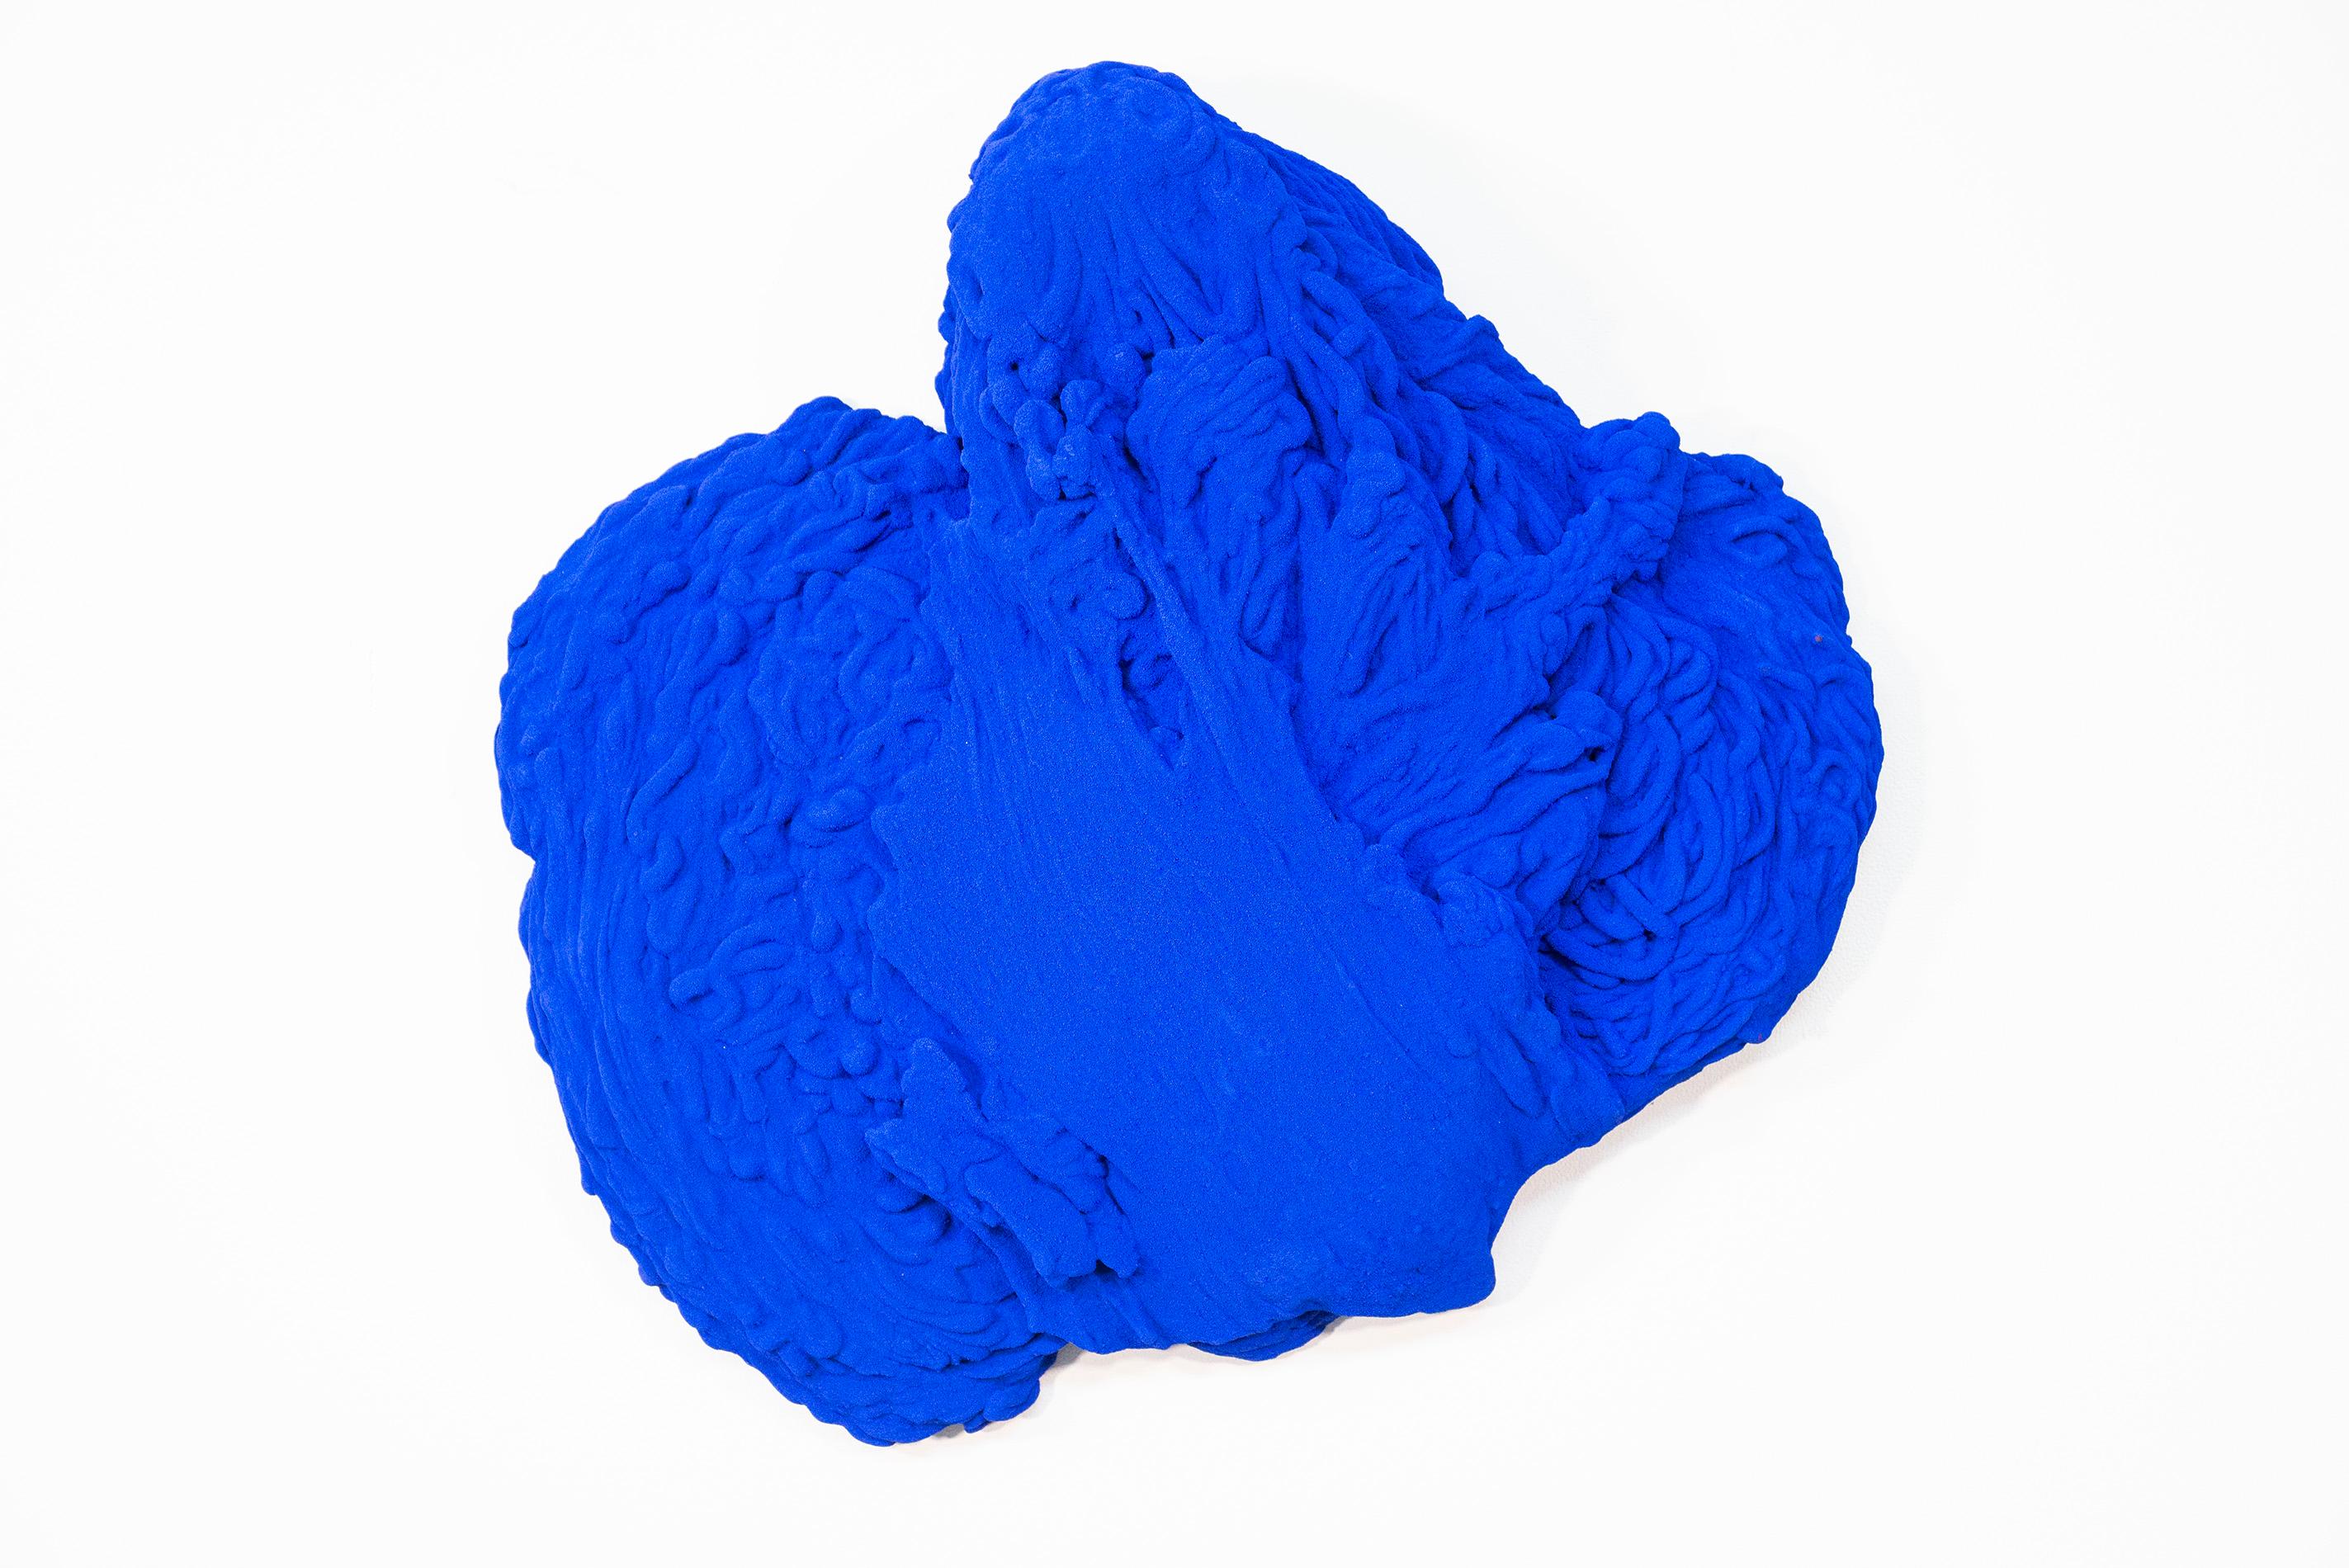 Shayne Dark Abstract Sculpture - Blue Matter 2 - matte, blue, textured, abstract, mixed media wall sculpture